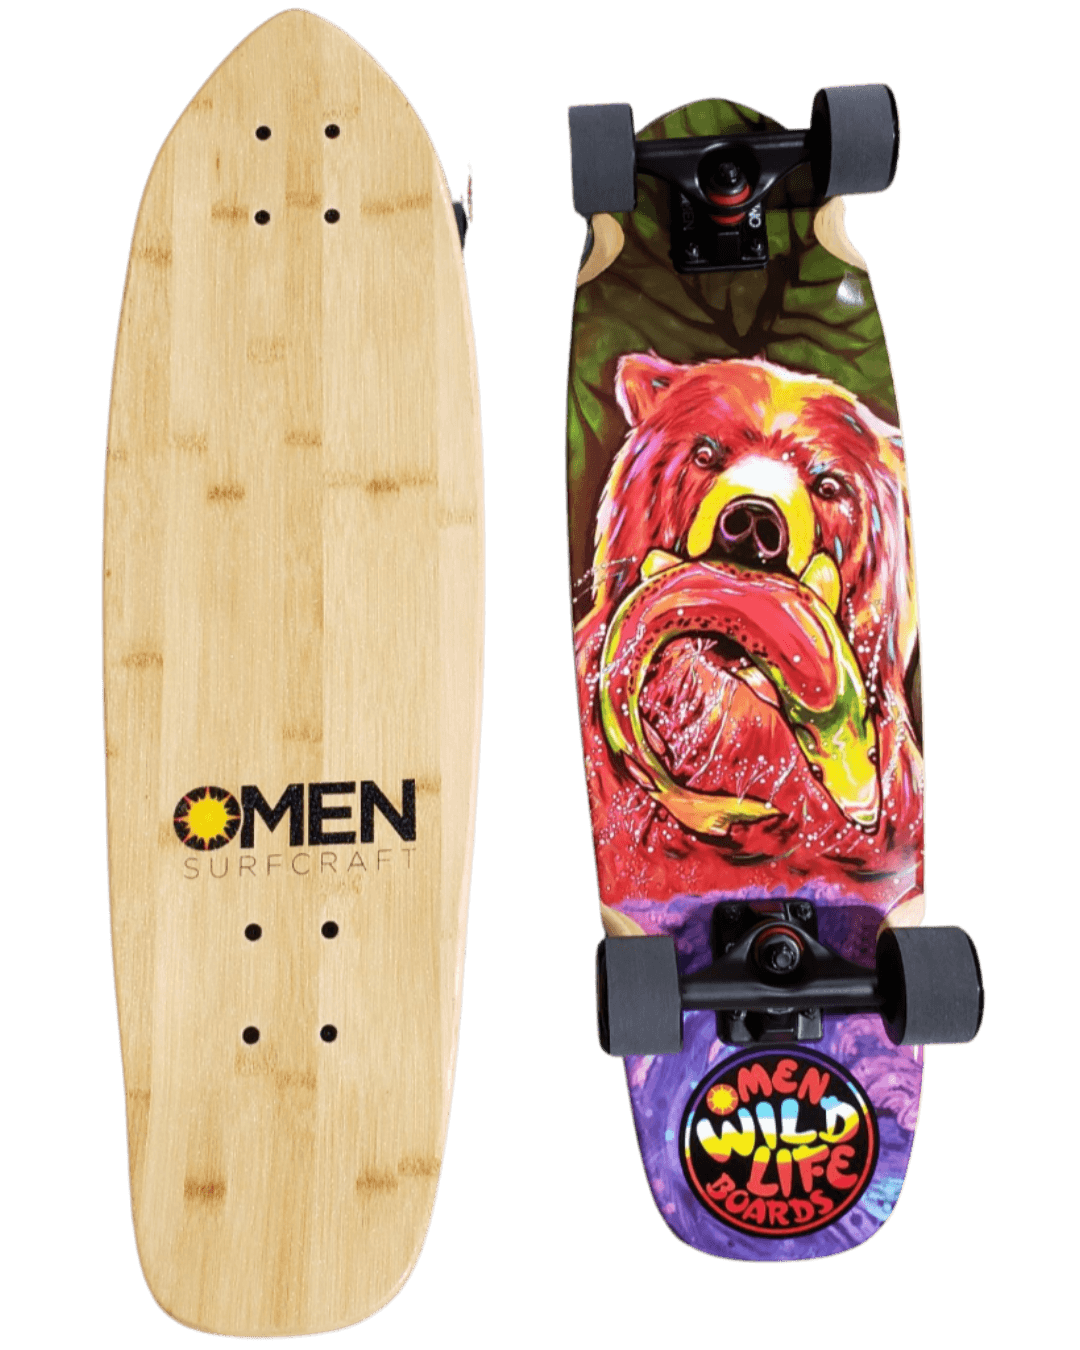 Omen: Fisher King 29" Longboard Skateboard Complete - Motion Boardshop